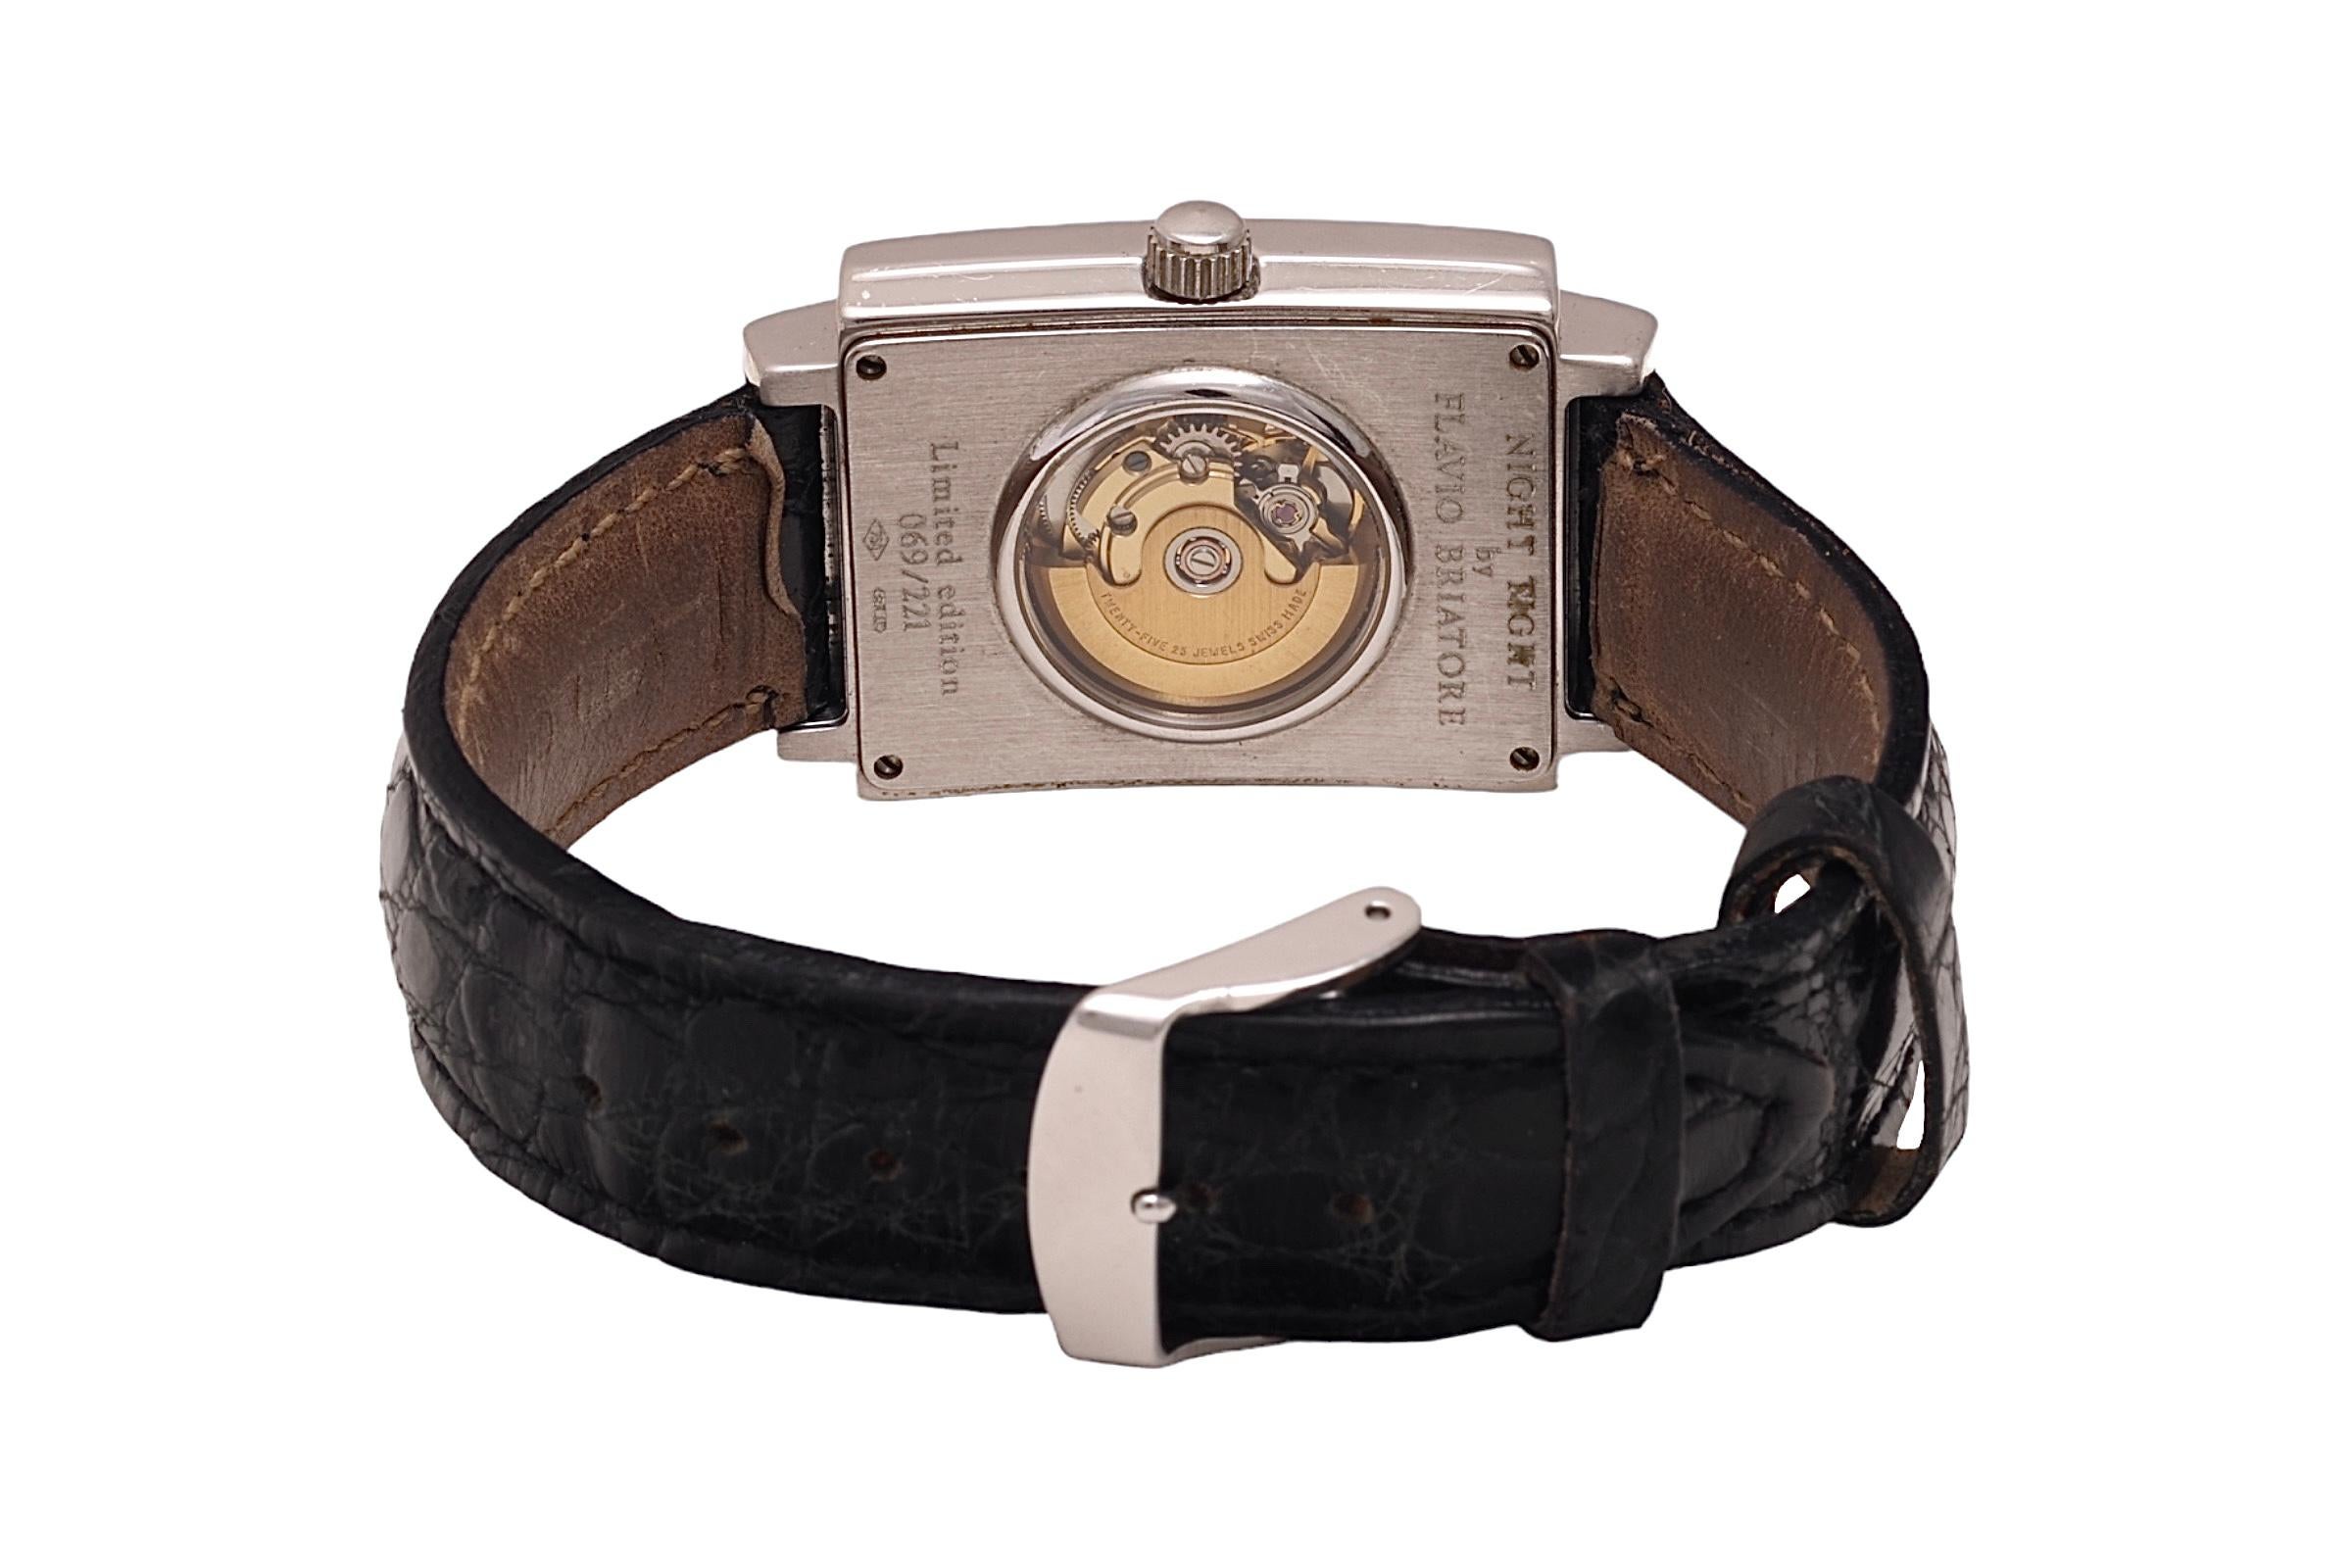 18 Kt Gold Flavio Briatore / Carlo Riva Limited Edition Diamond Wrist Watch  For Sale 2